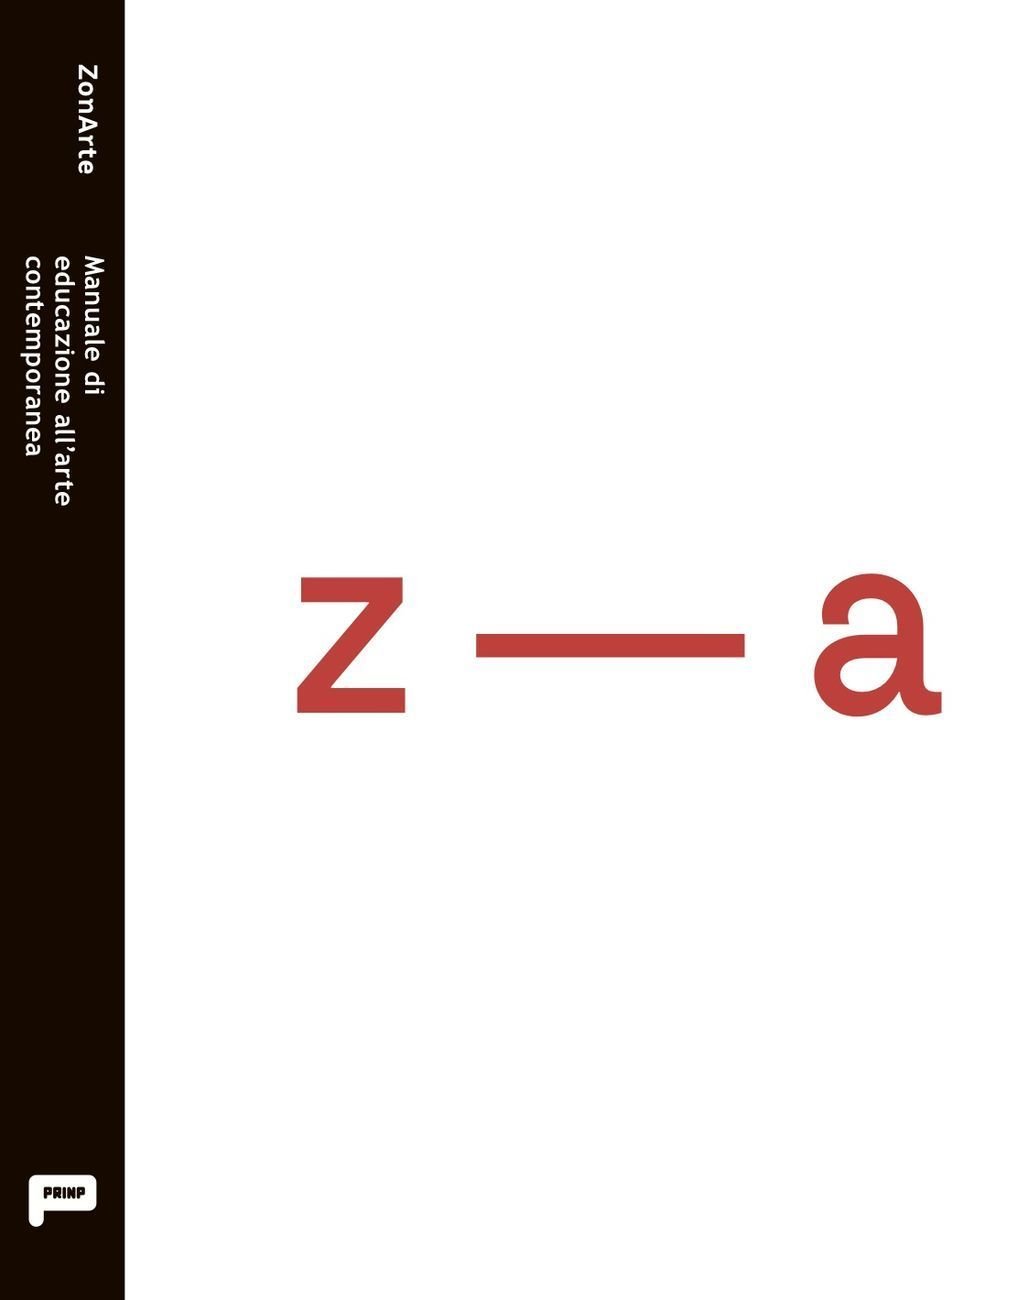 ZonArte – Manuale di educazione all’arte contemporanea (Prinp, Torino 2017)